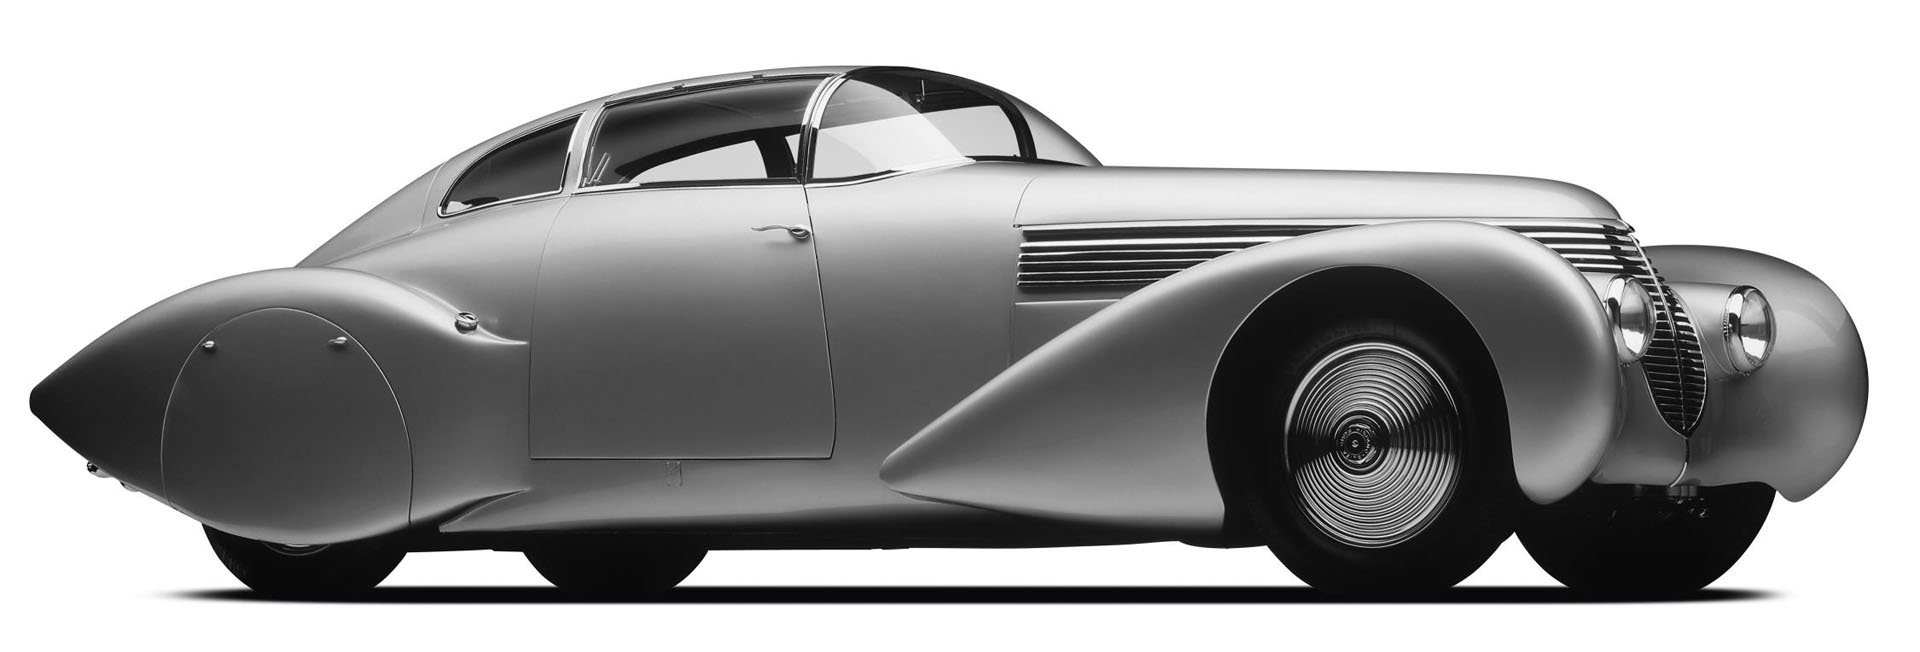 Thương hiệu trăm năm Hispano Suiza trở lại bằng siêu xe điện